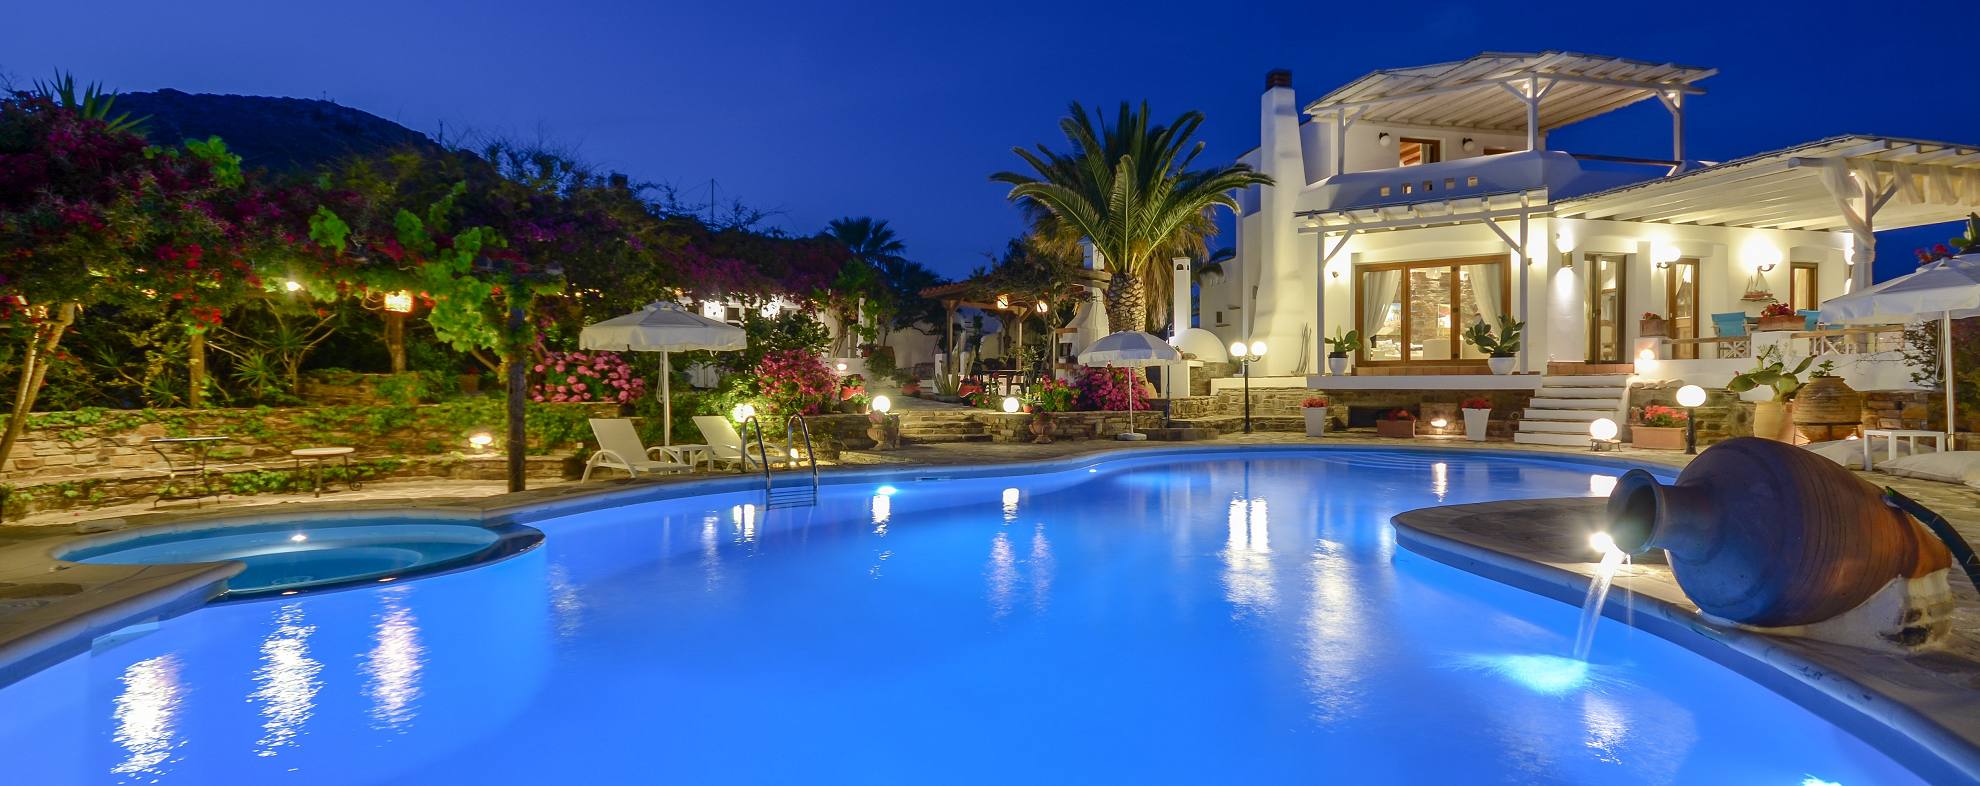 Luxurious Villa in Naxos